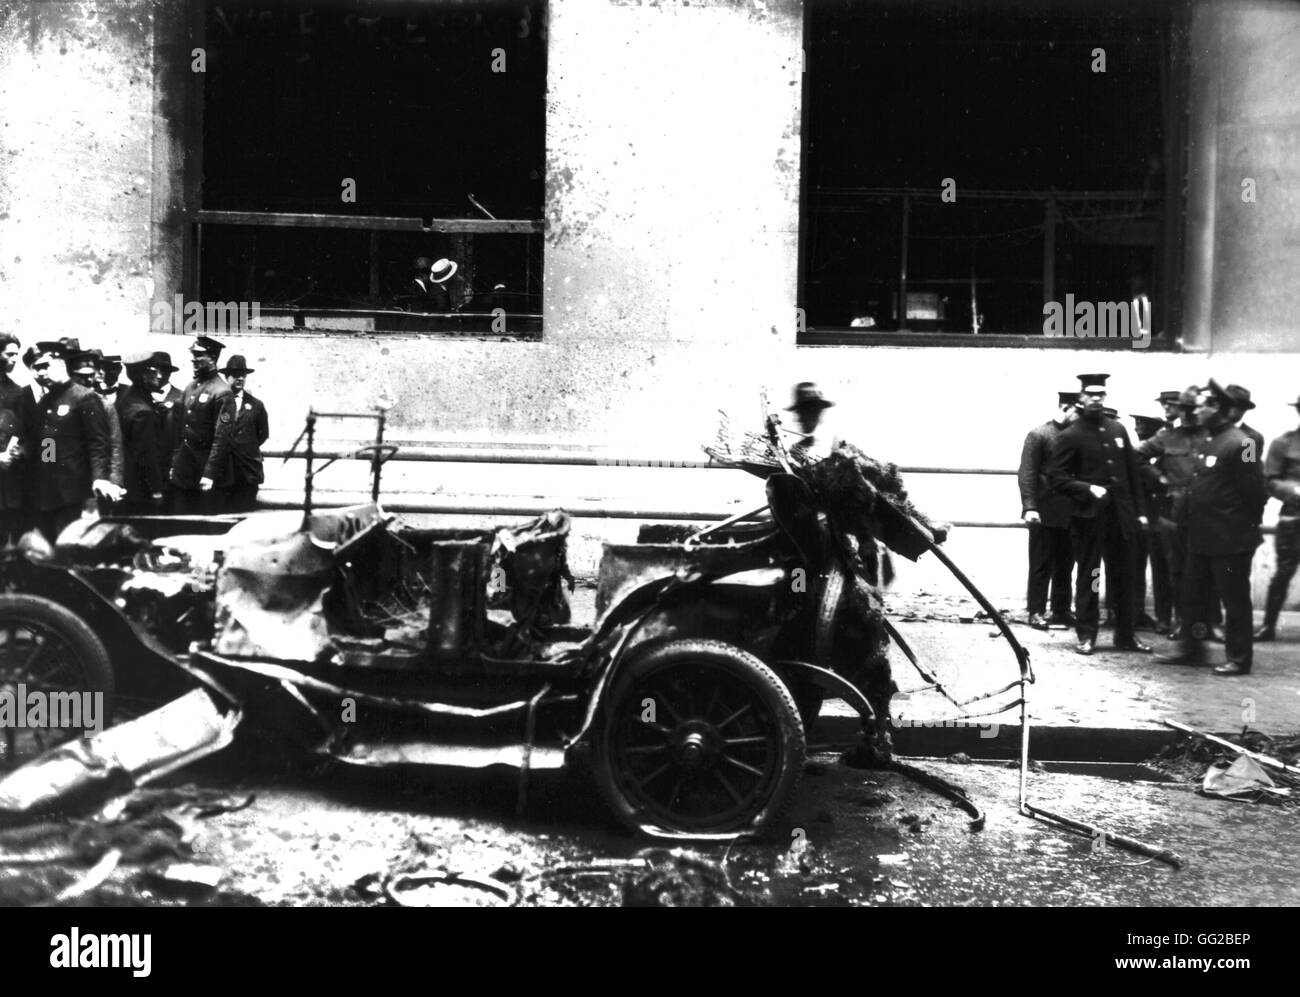 Nueva York. Atentado anarquista en Wall Street. Bomba explotó frente ot Morgan Bank de septiembre de 1920 Estados Unidos Washington. La Biblioteca del Congreso Foto de stock